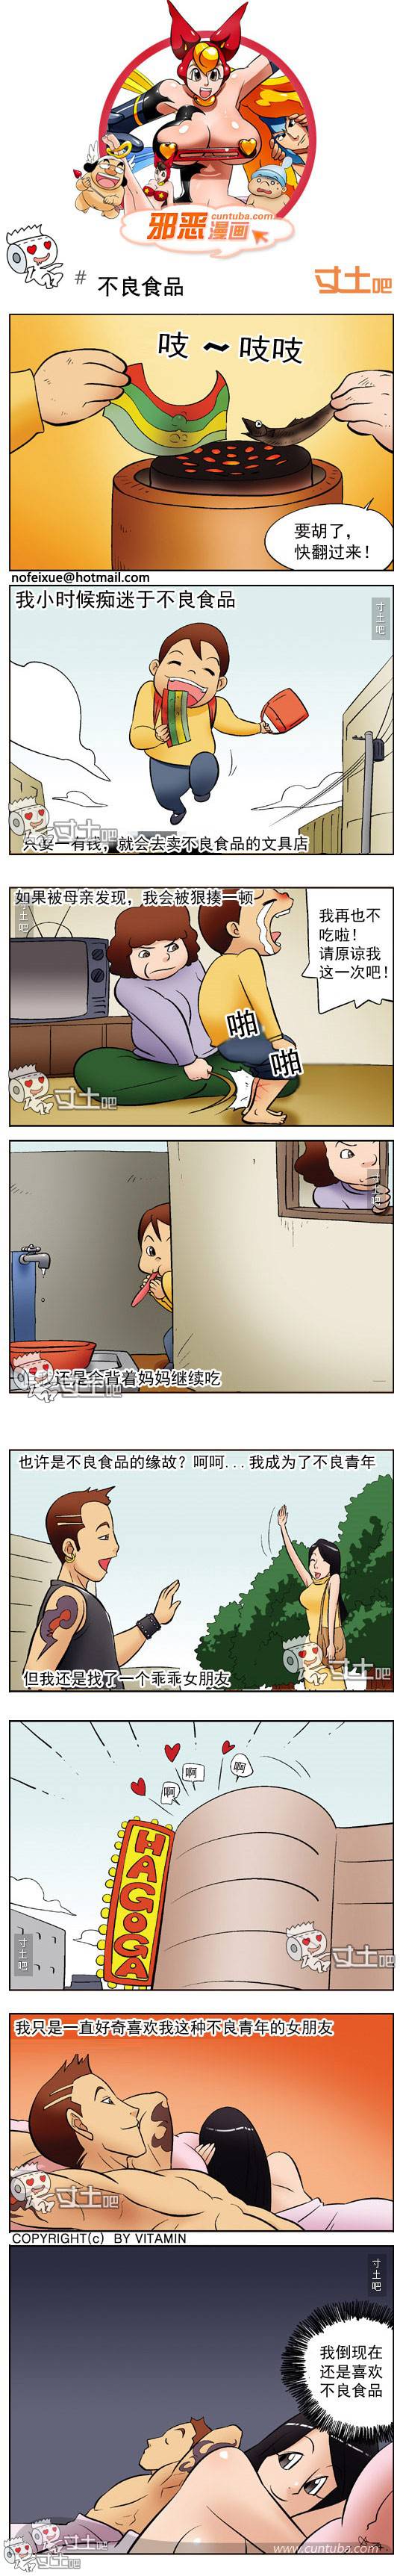 邪恶漫画爆笑囧图第272刊：女人无处不在的诱惑